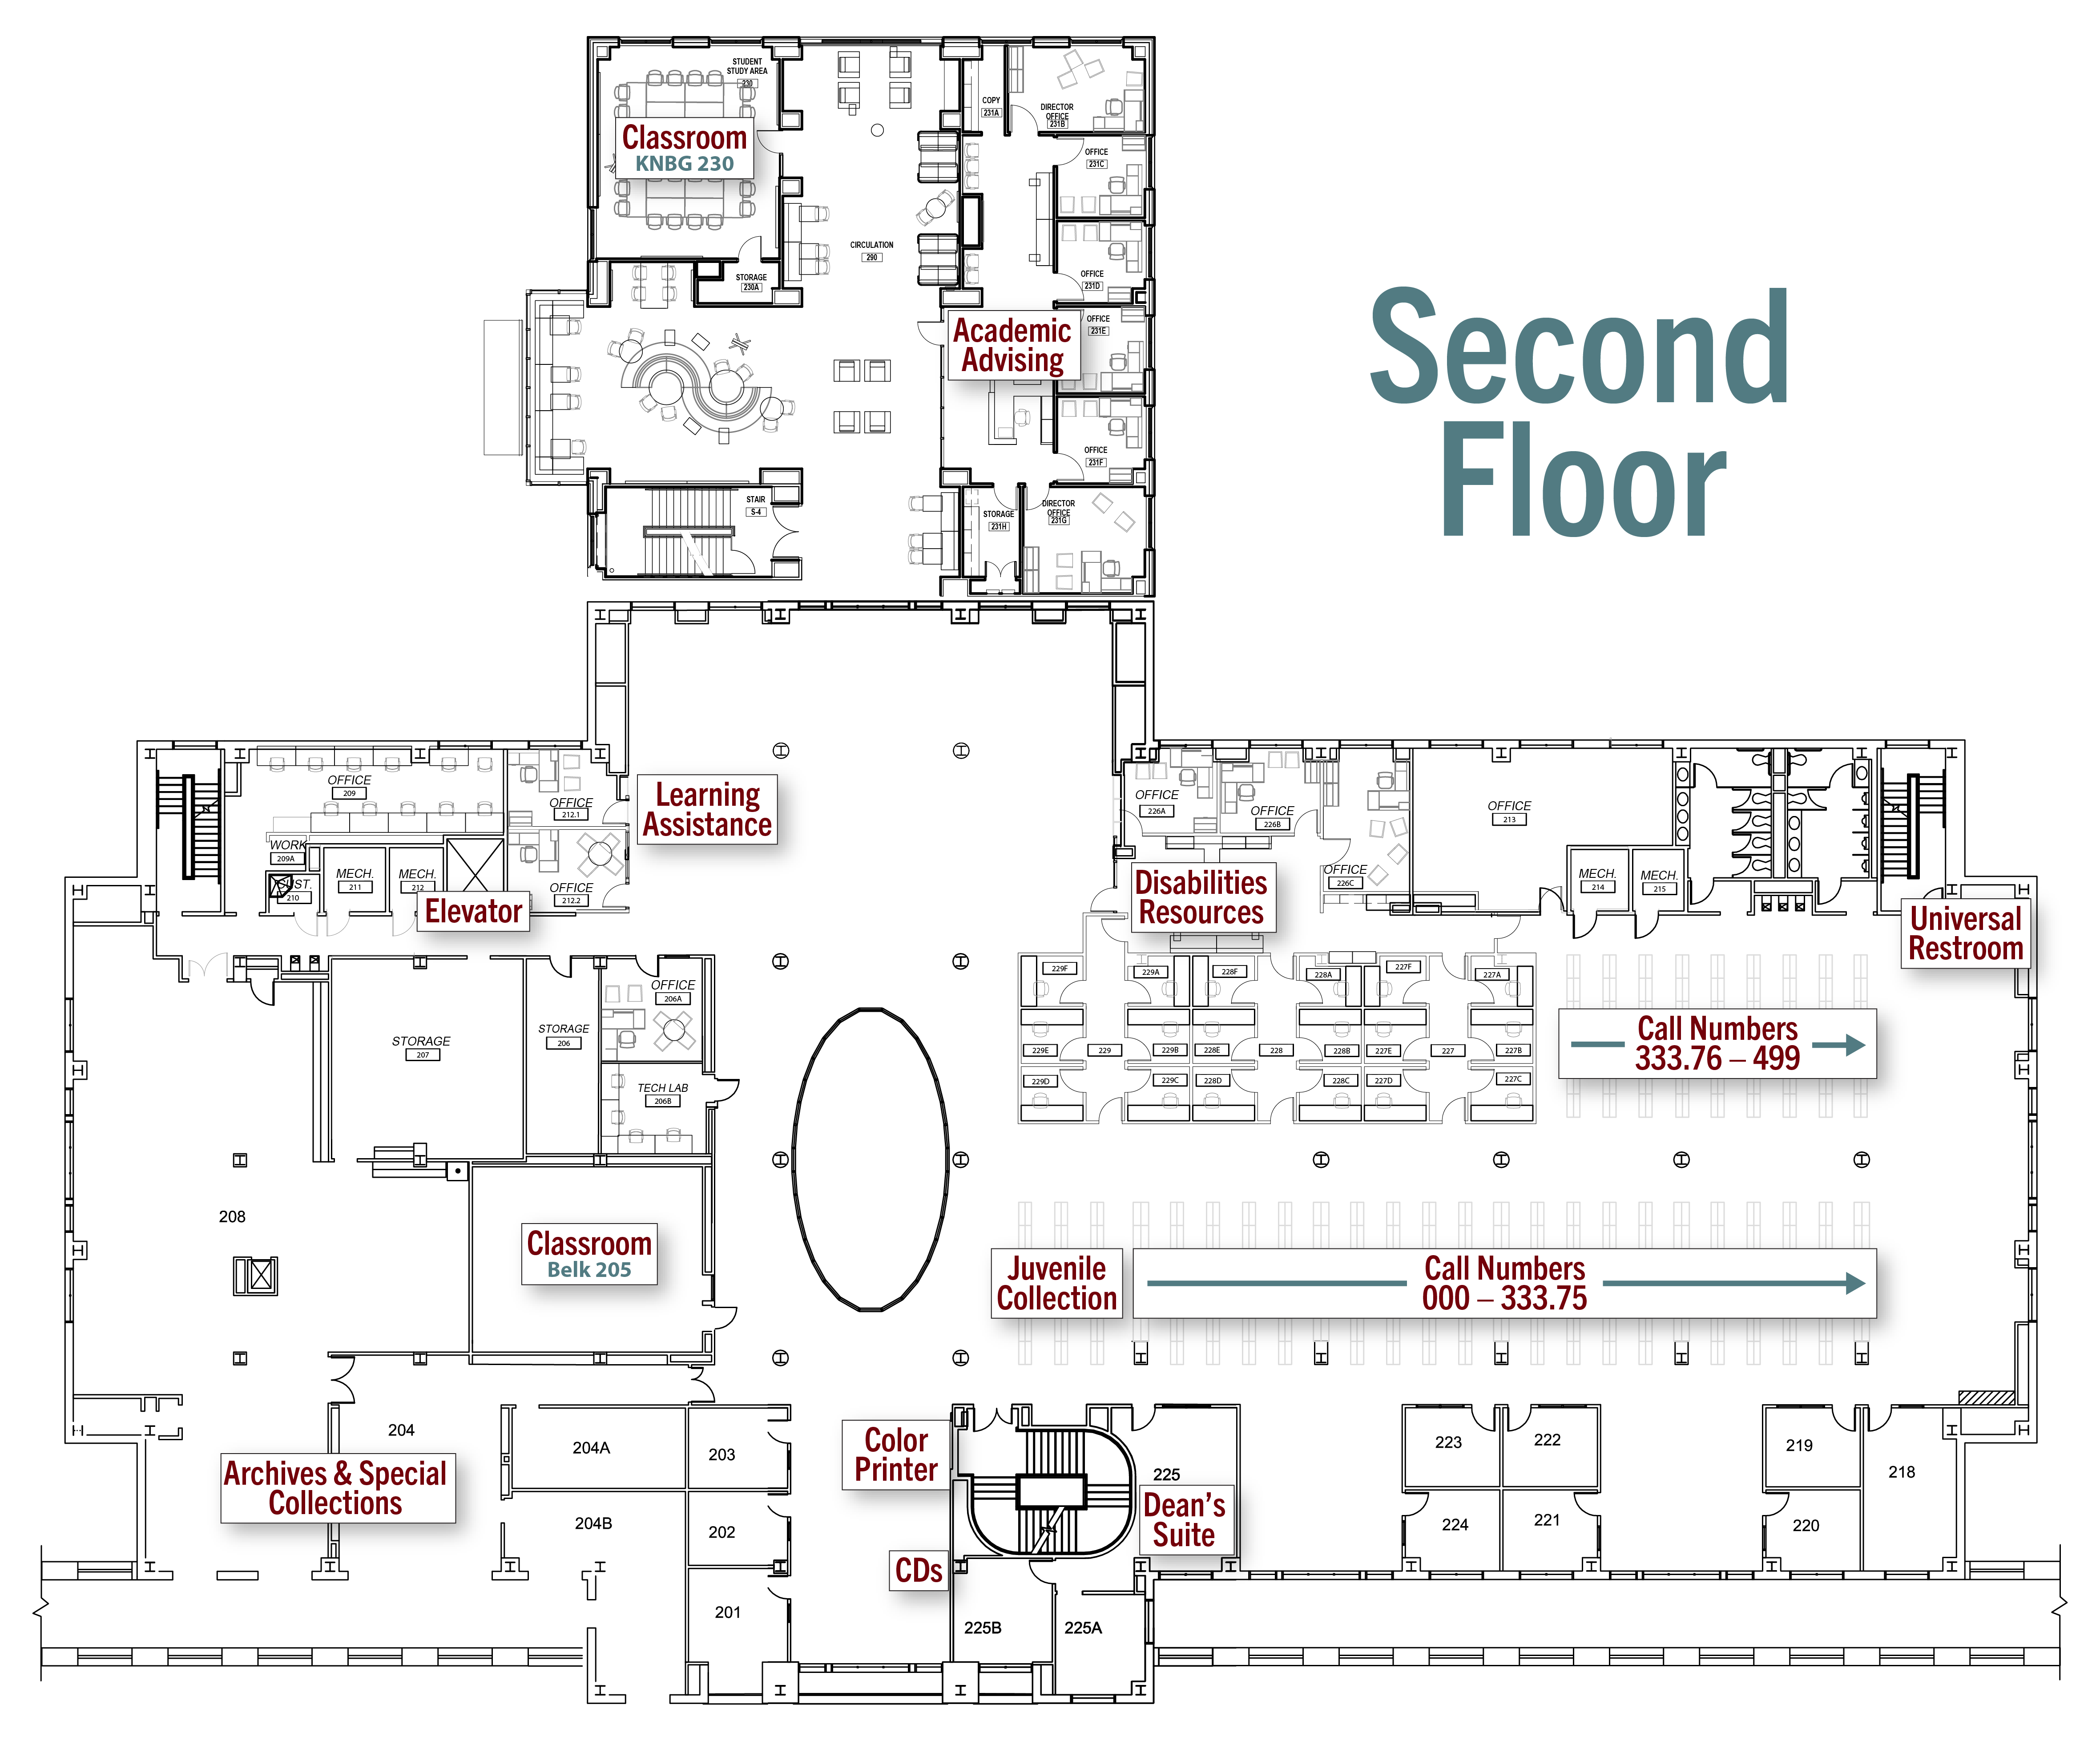 Floor plan of Belk Library & KLC second floor.